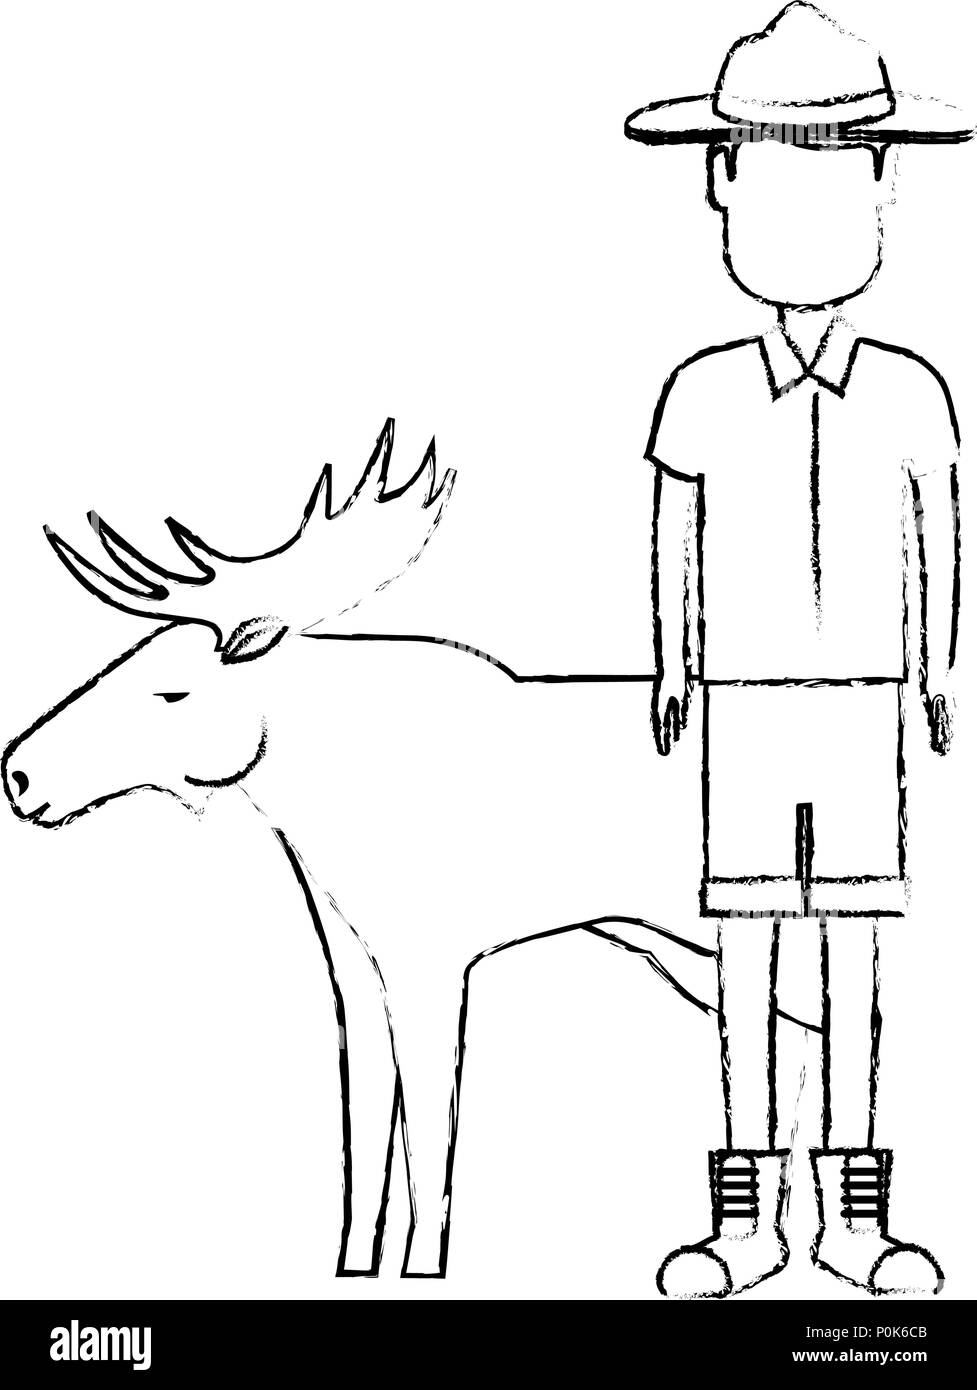 Canadian Ranger with elk Stock Vector